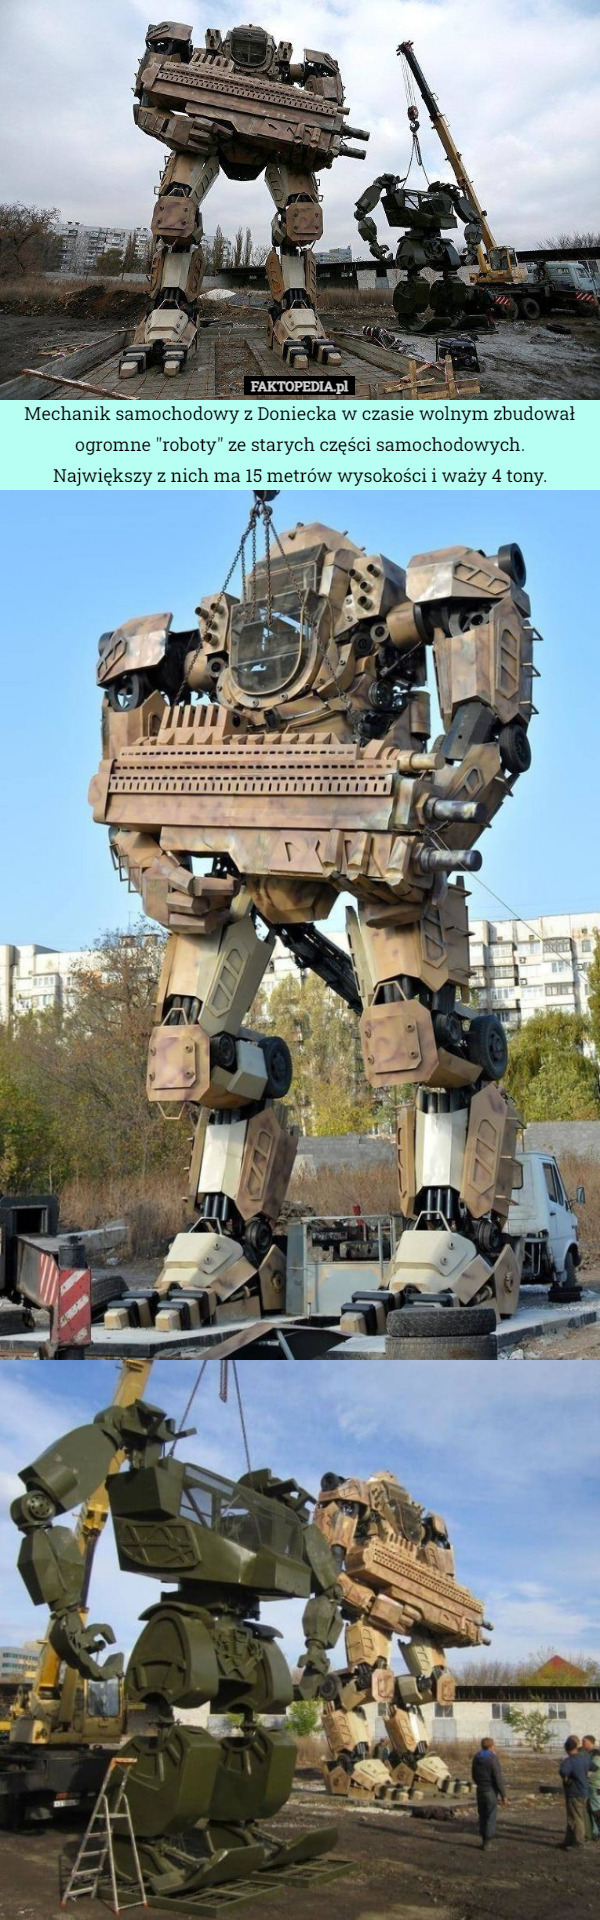 Mechanik samochodowy z Doniecka w czasie wolnym zbudował ogromne "roboty"...